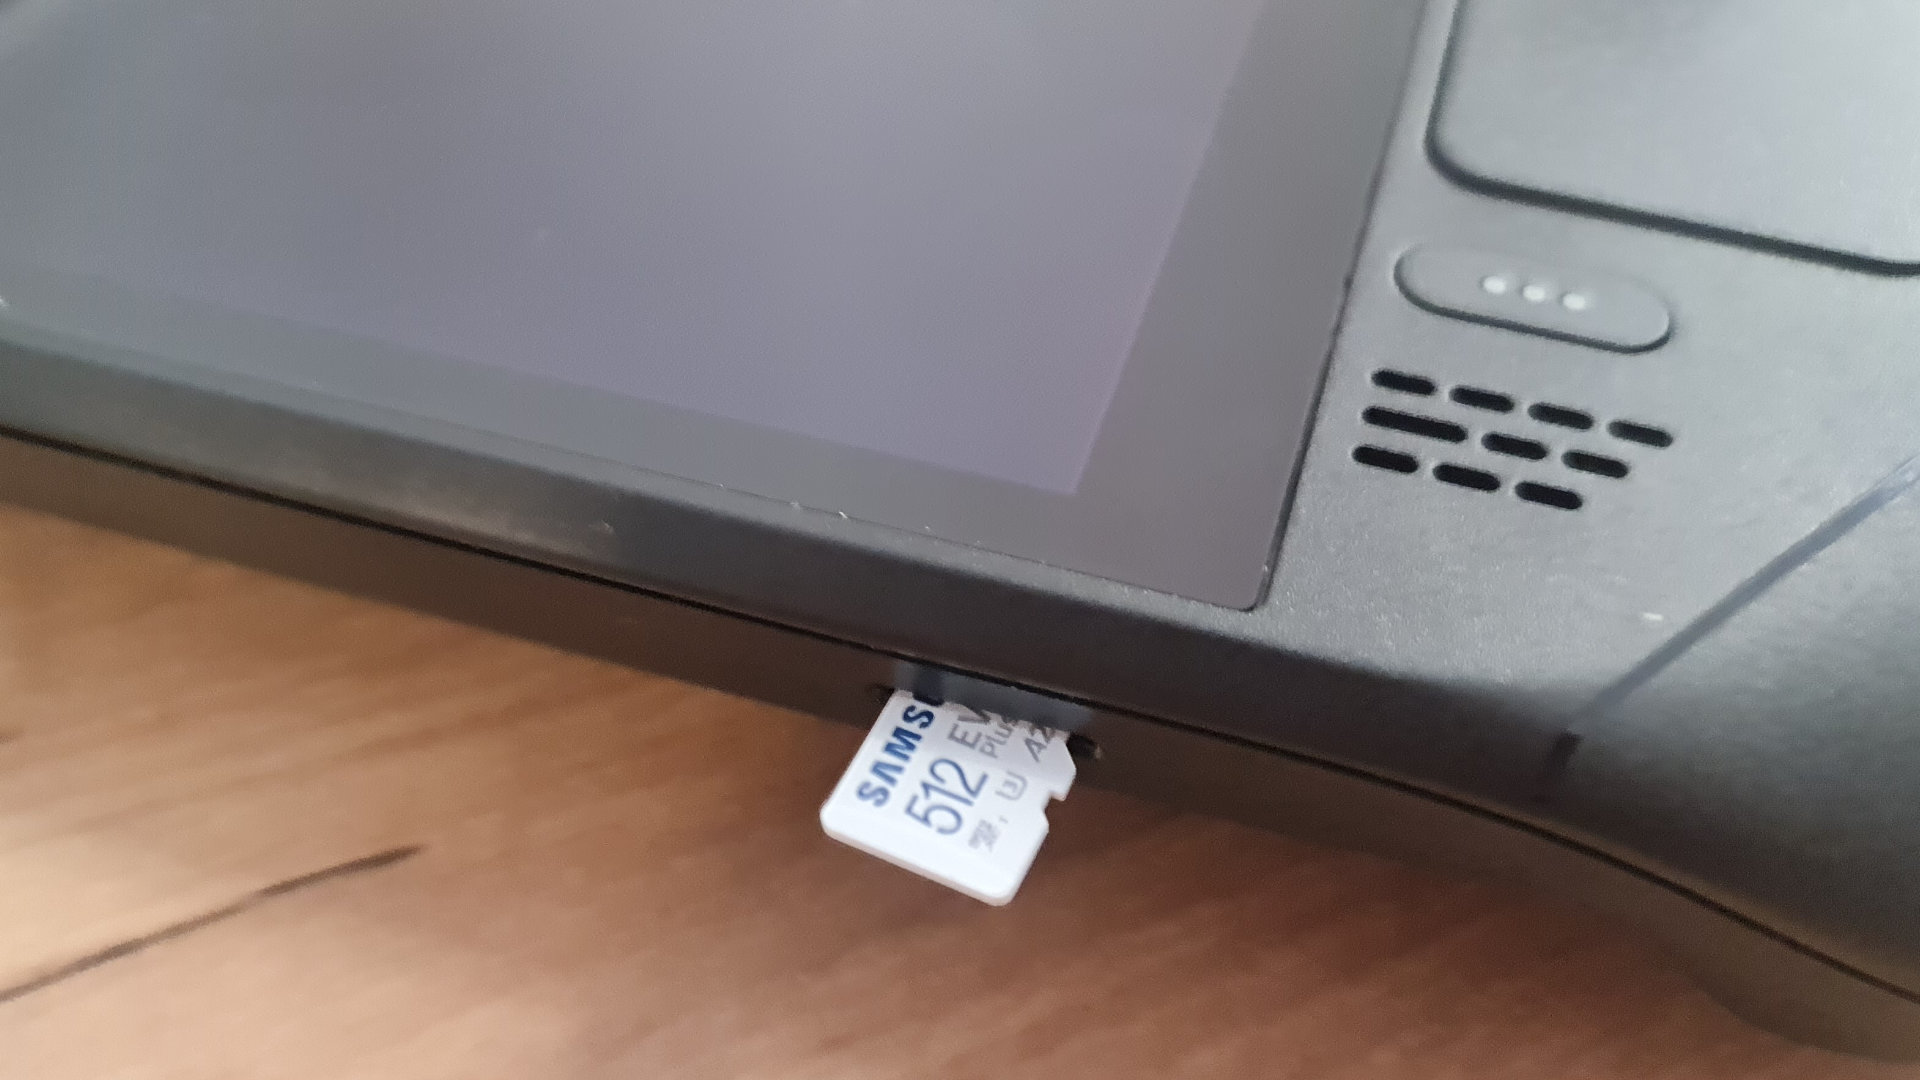 Best Steam Deck microSD card 2023